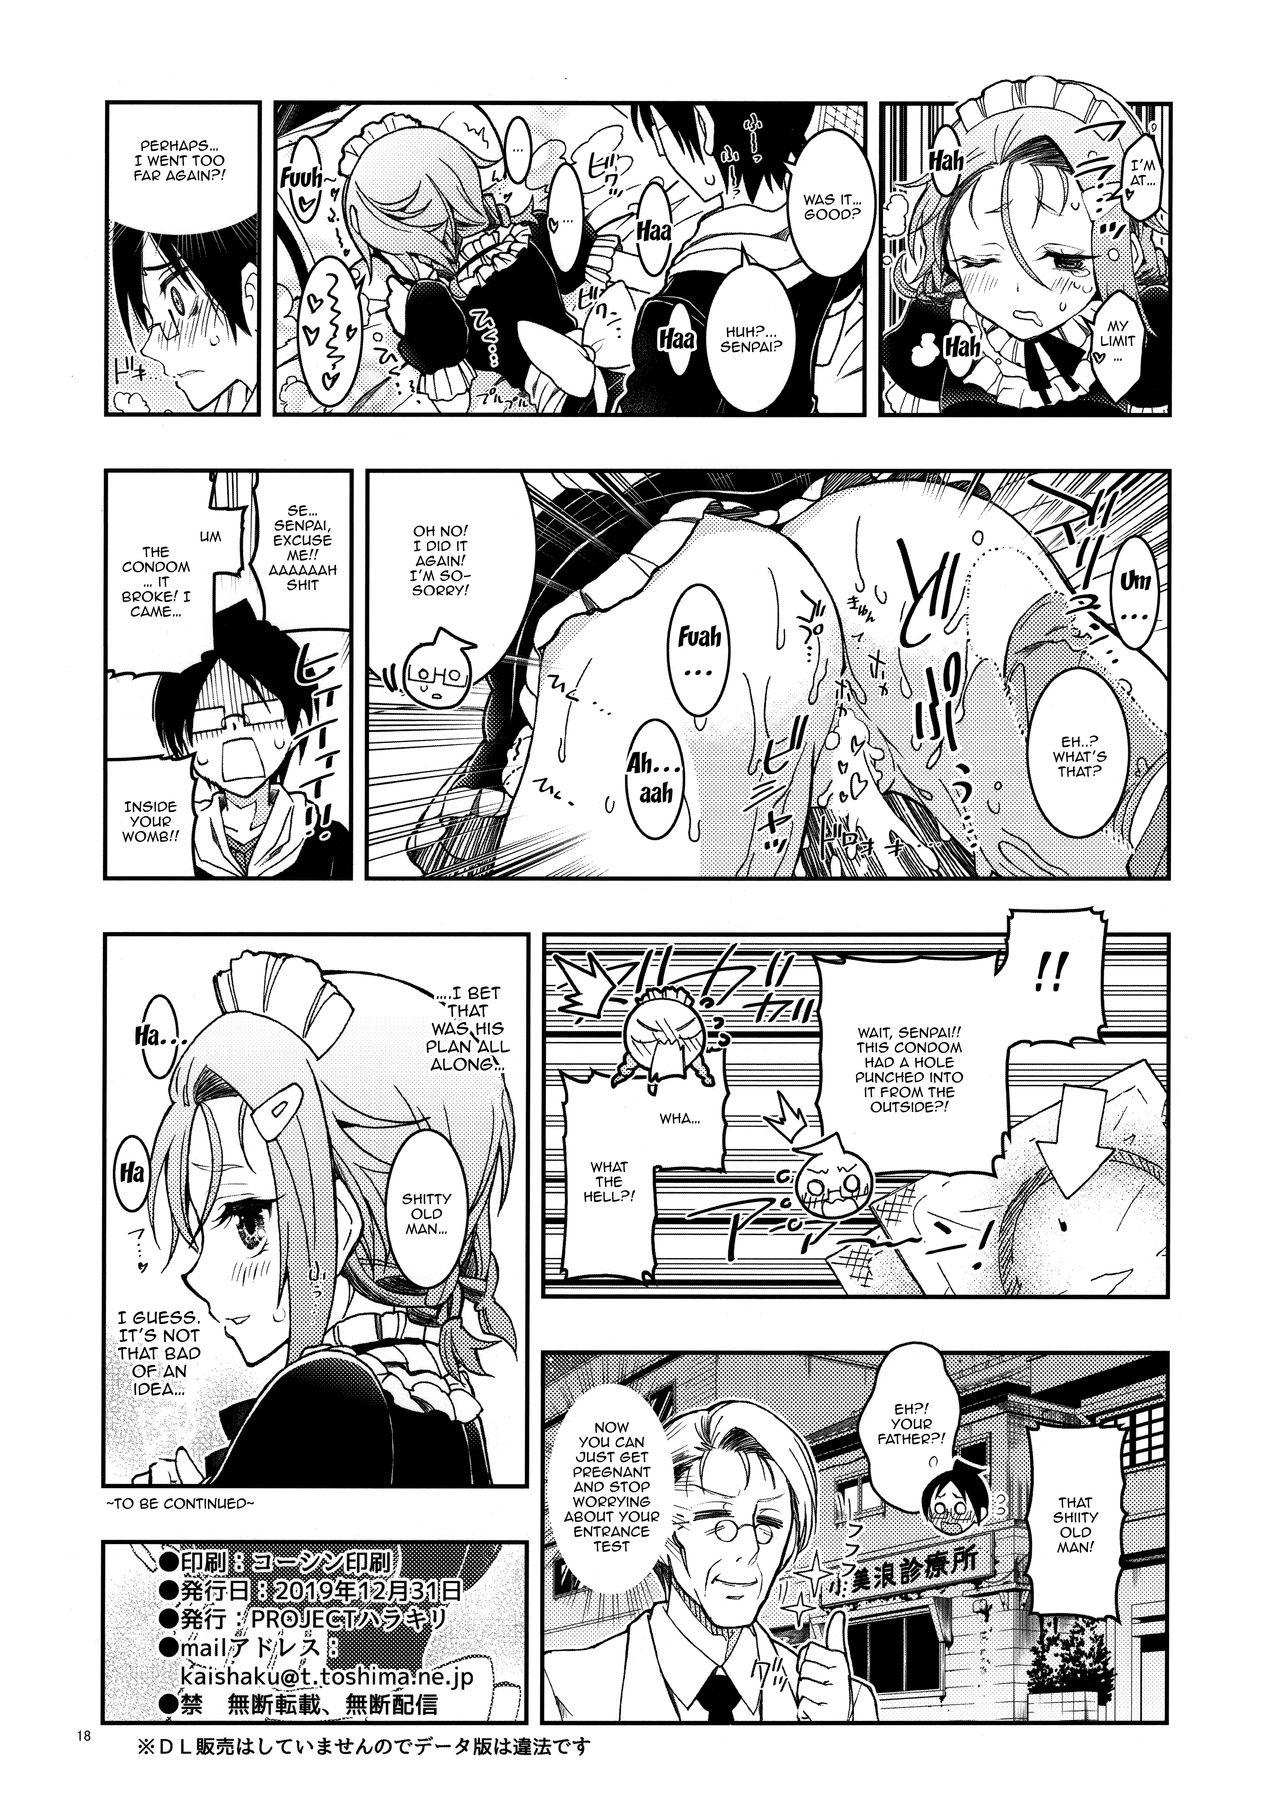 3some BOKUTACHIHA FUMINOMO ASUMIMO KAWAII | Fumino and Asumi are so Cute - Bokutachi wa benkyou ga dekinai Cavalgando - Page 17